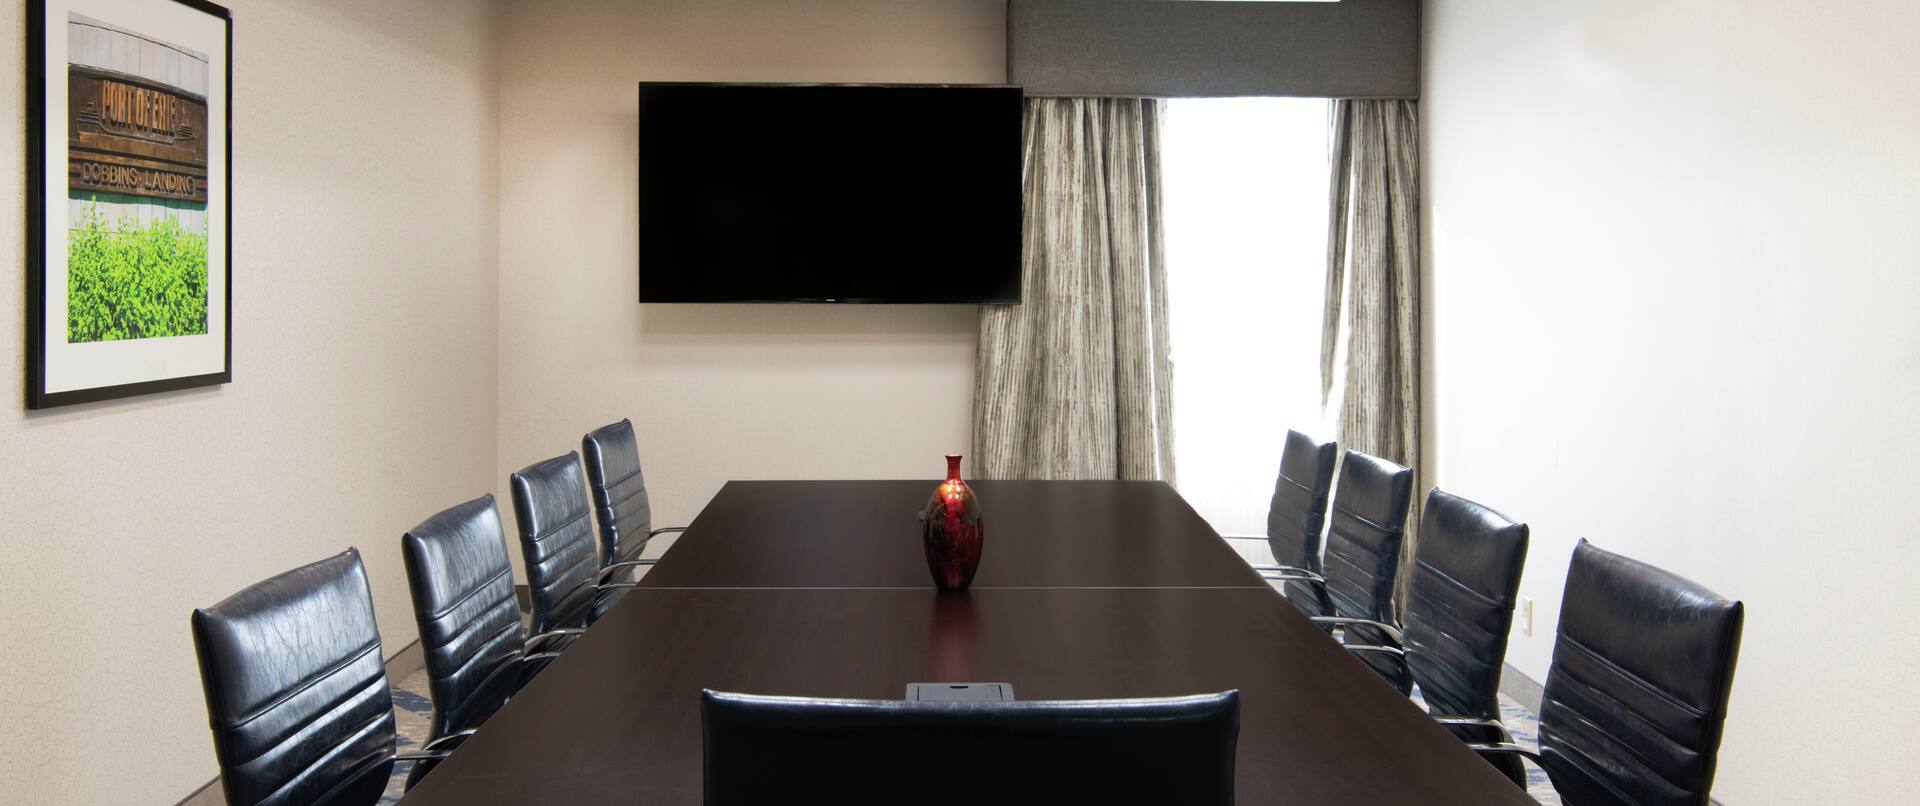 Executive Boardroom